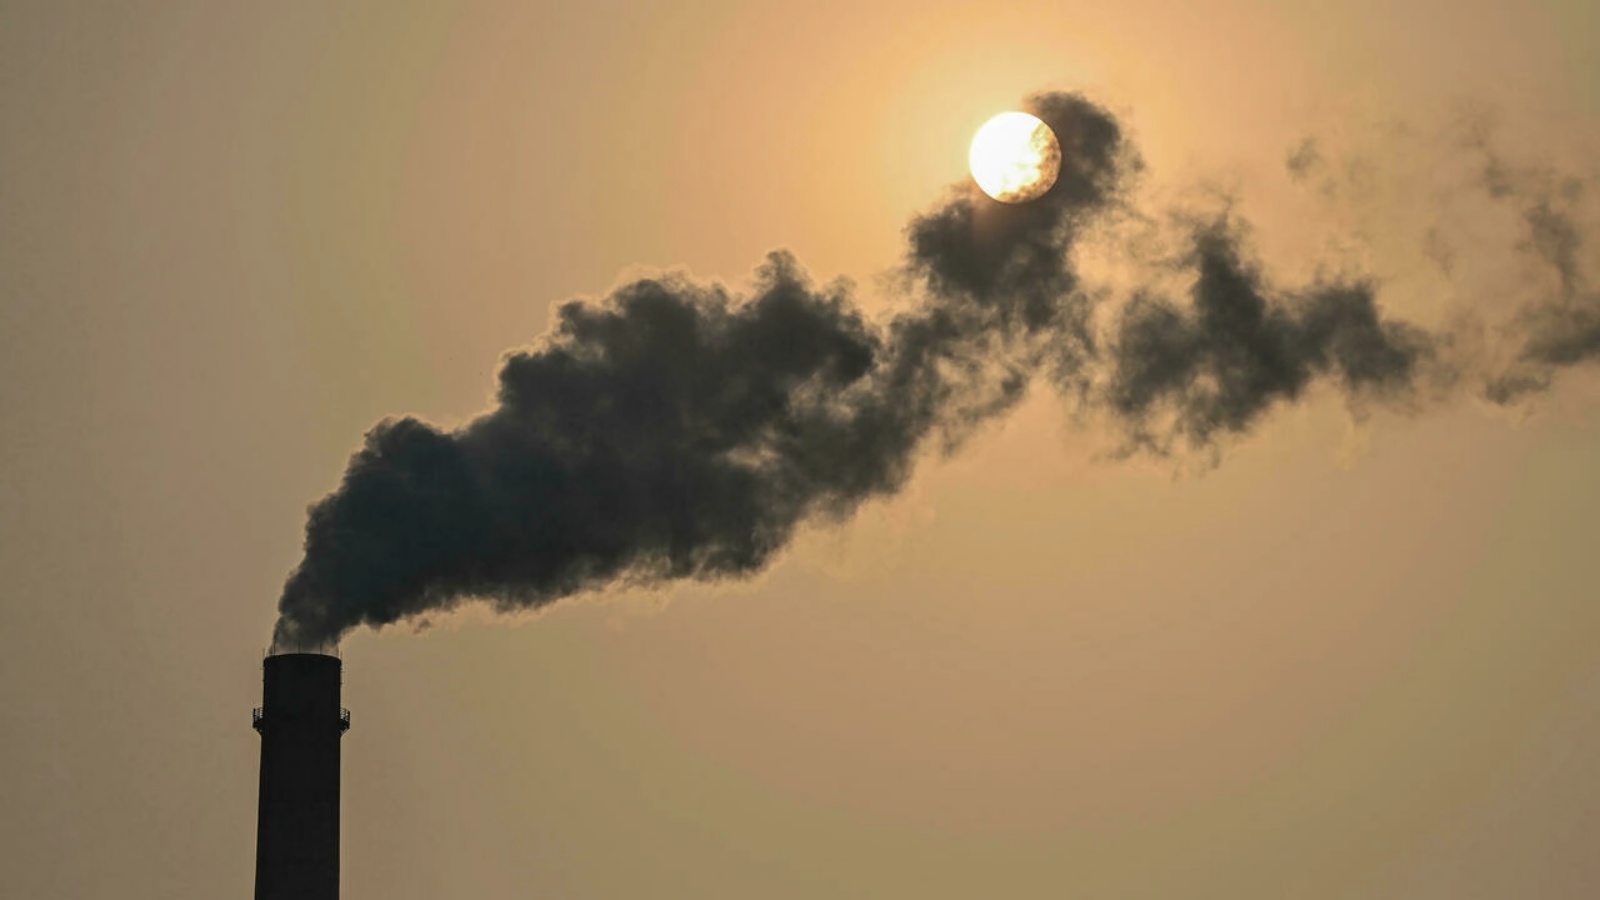 مداخن تنفث دخّاناً ضارّاً في الهواء من محطة طاقة ضخمة تعمل بالفحم على الساحل الإندونيسي، وهو مثال صارخ على إدمان آسيا للوقود الأحفوري الذي يهدد الأهداف المناخية.